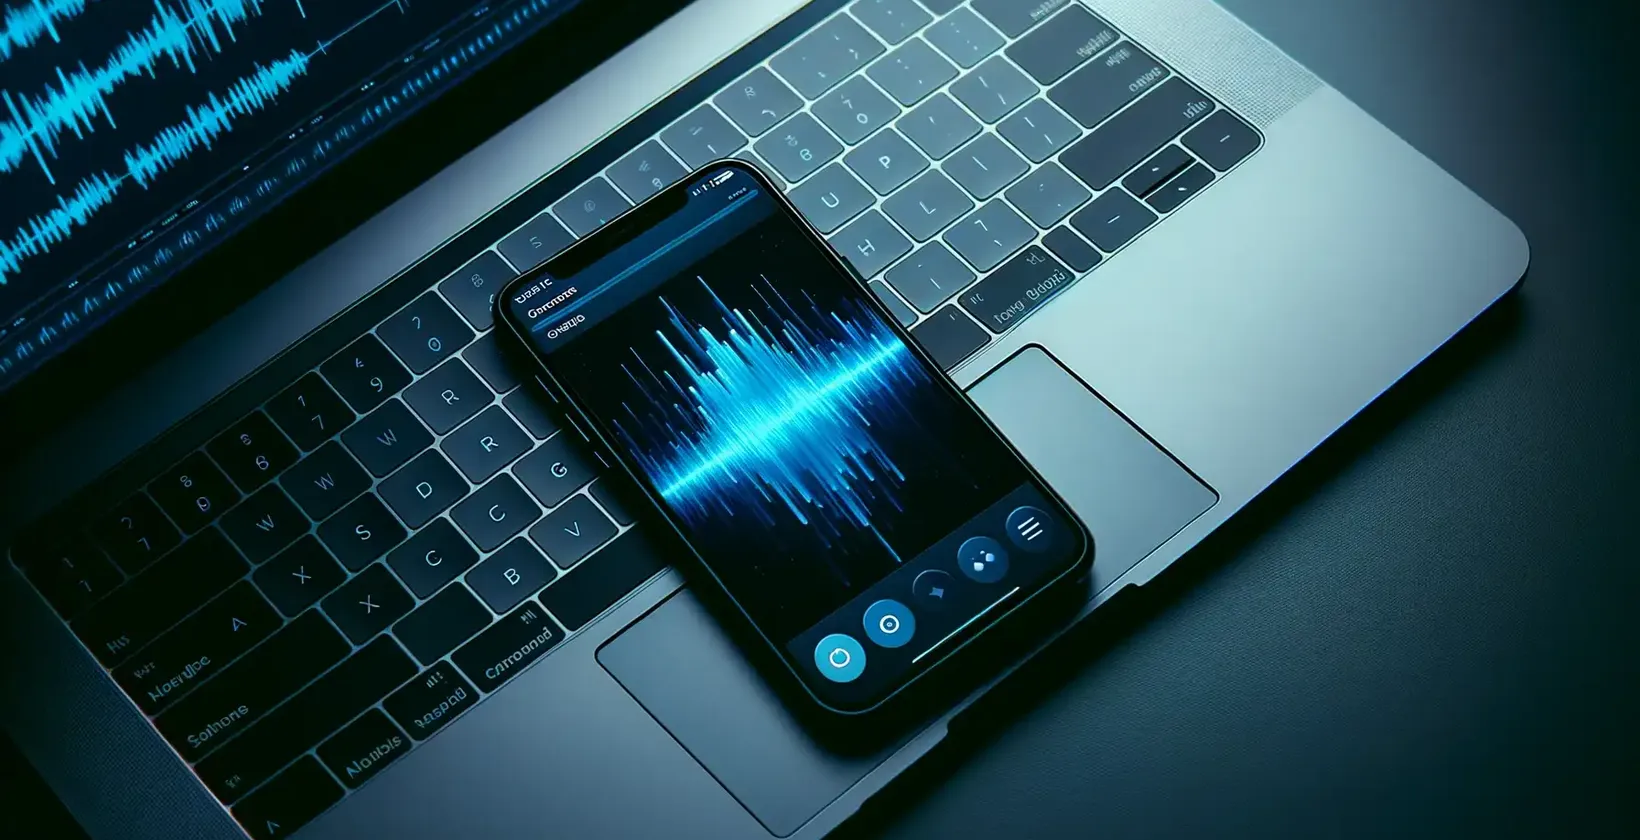 Pohled zblízka na iPhone zobrazující živé zvukové křivky vedle osvětlené klávesnice notebooku.